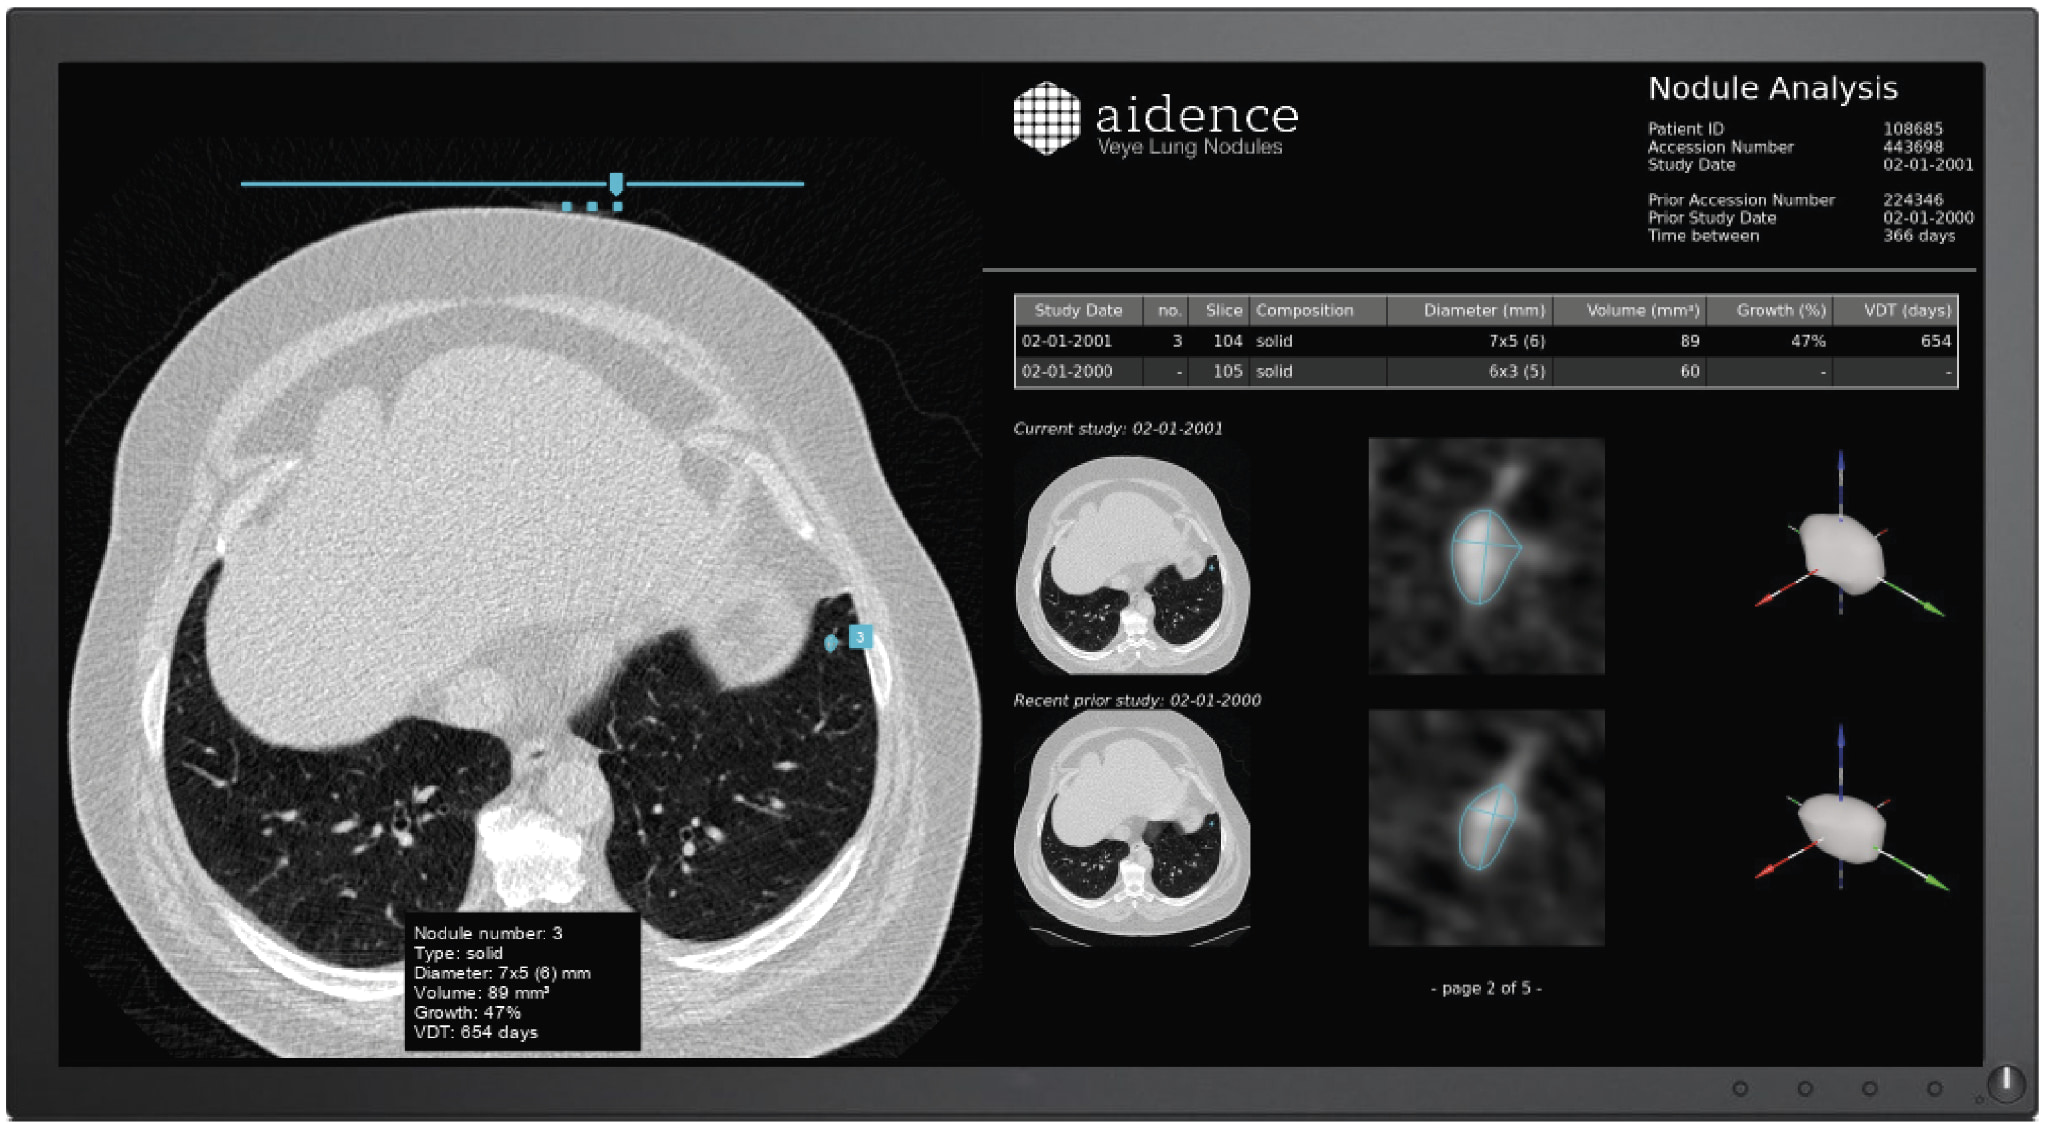 El sistema de Aidence ayuda a detectar, medir, clasificar y seguir el crecimiento de los nódulos pulmonares - Imagen de Veye Lung Nodules.